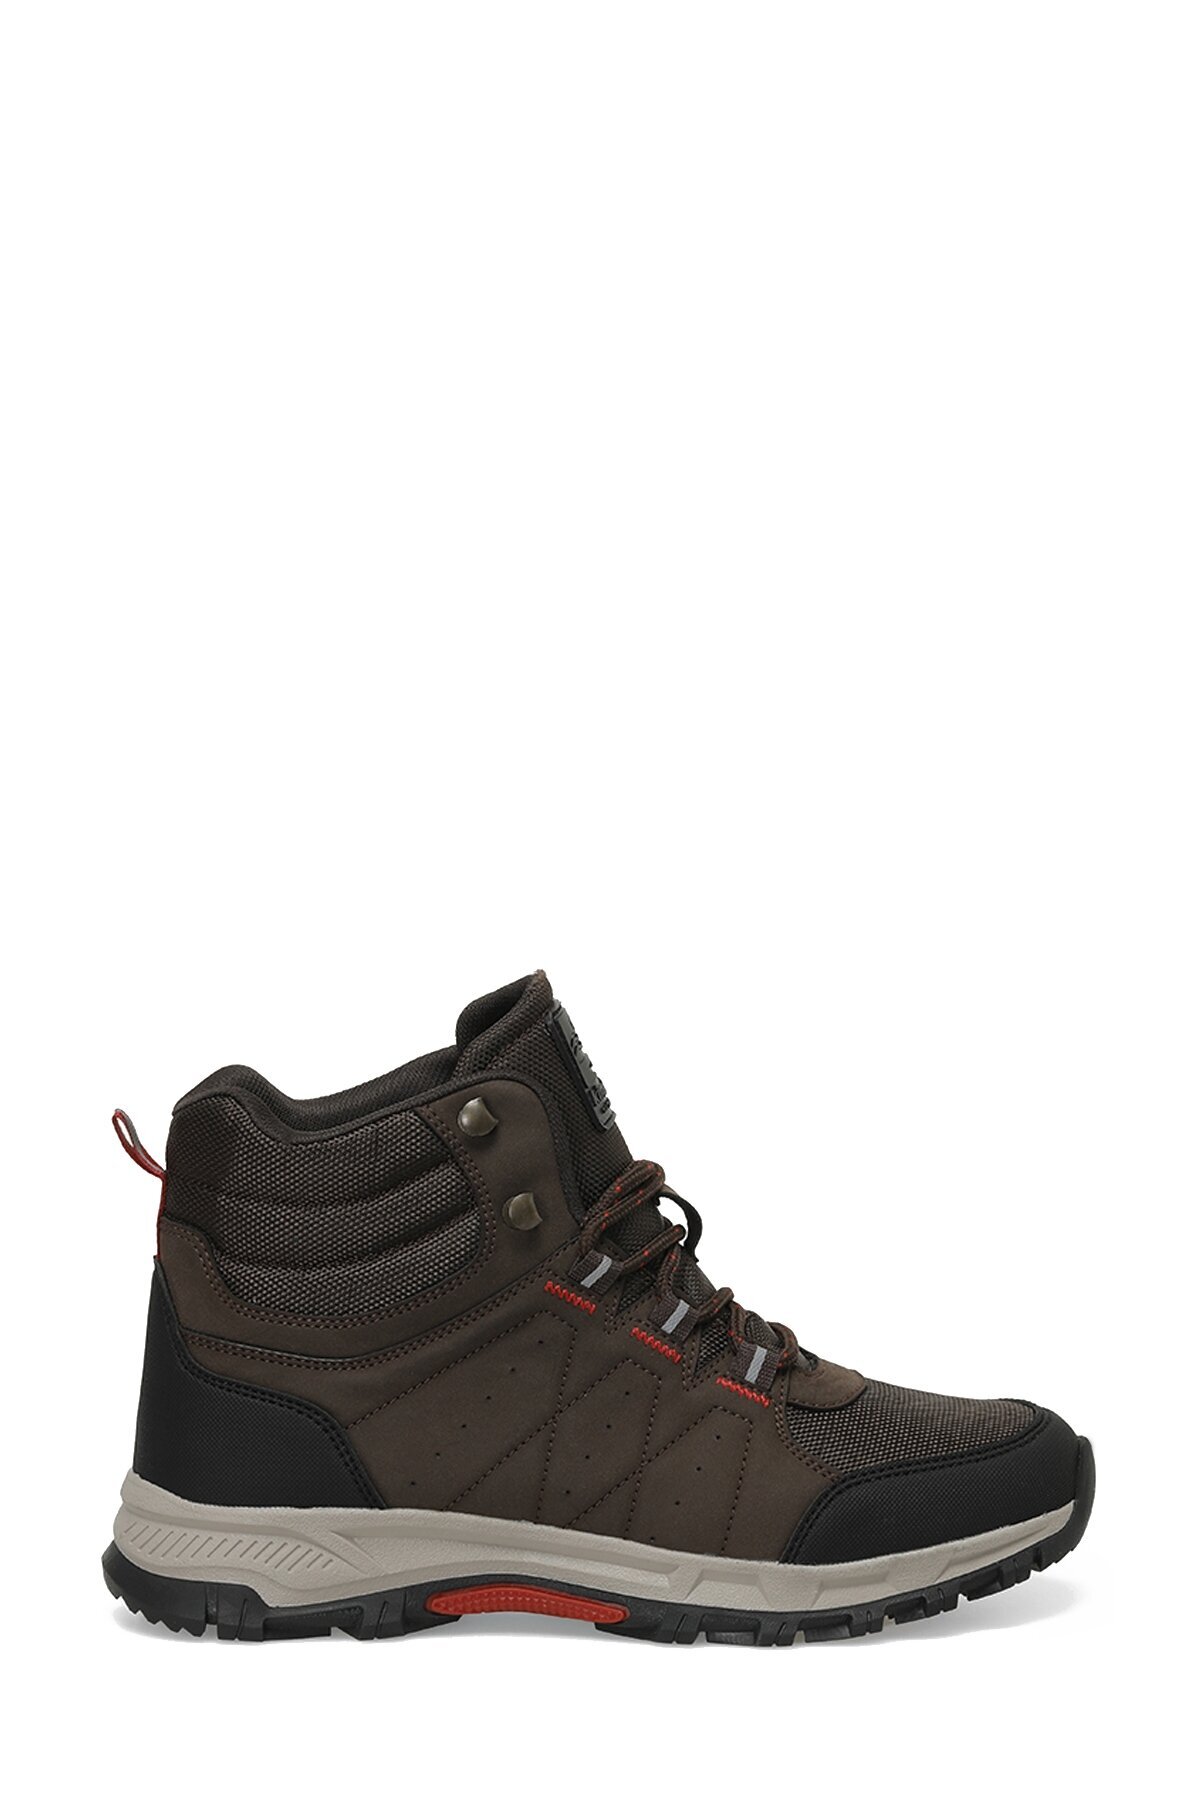 KINETIX Men's STRATOS HI 3PR Dark Brown Outdoor Boots